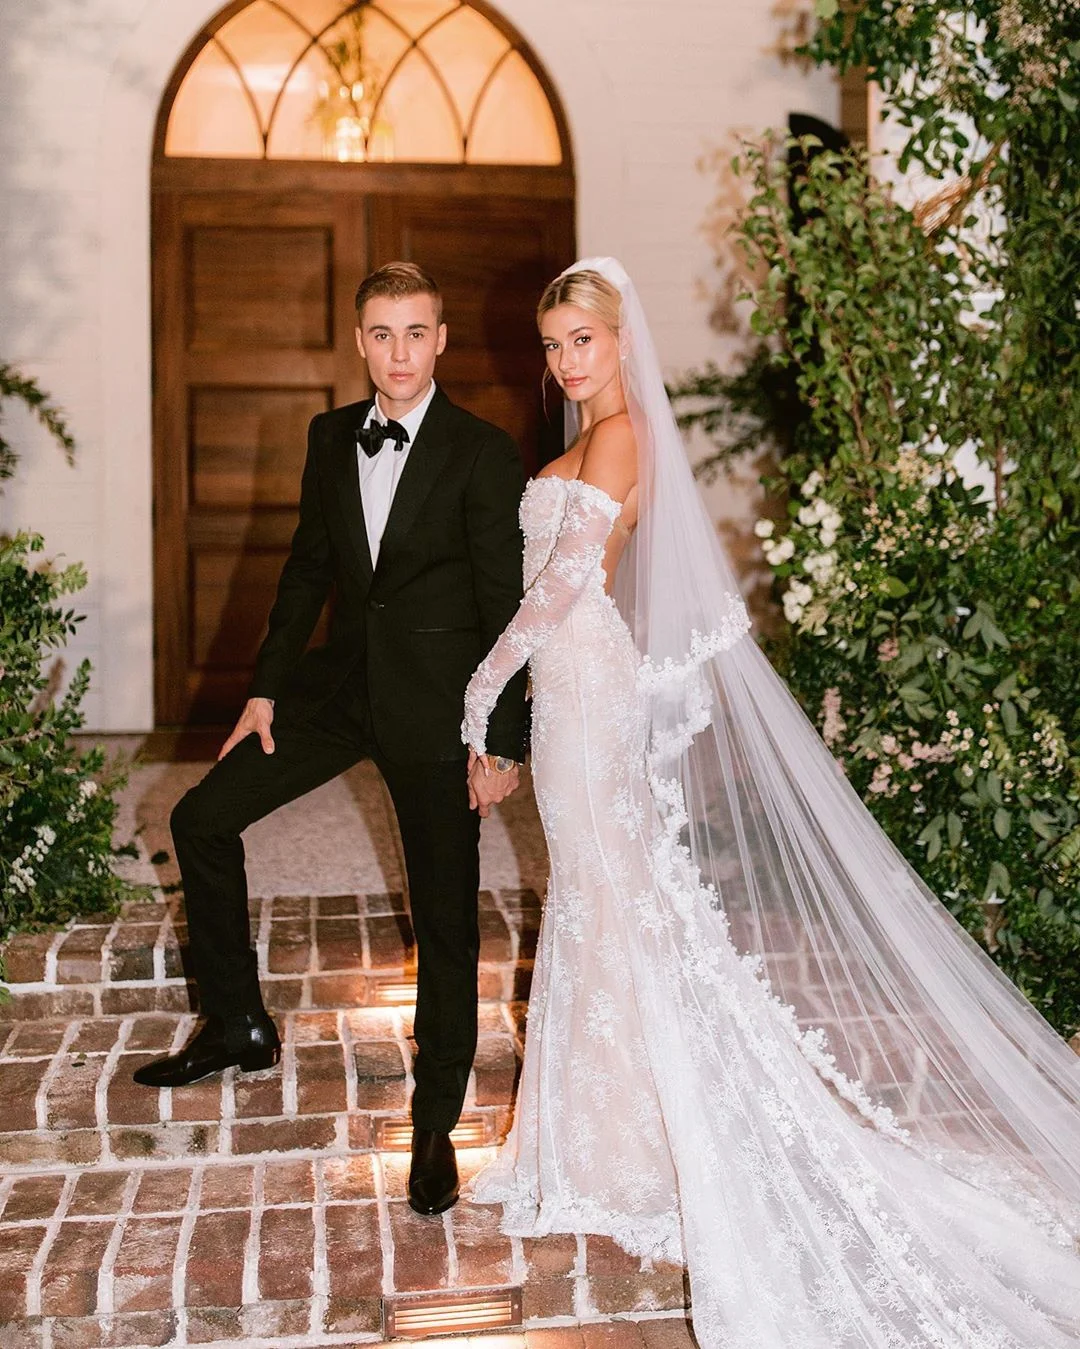 Джастин Бибер опубликовал новые фото со свадьбы, где видно его жену в белоснежном платье - фото 454813